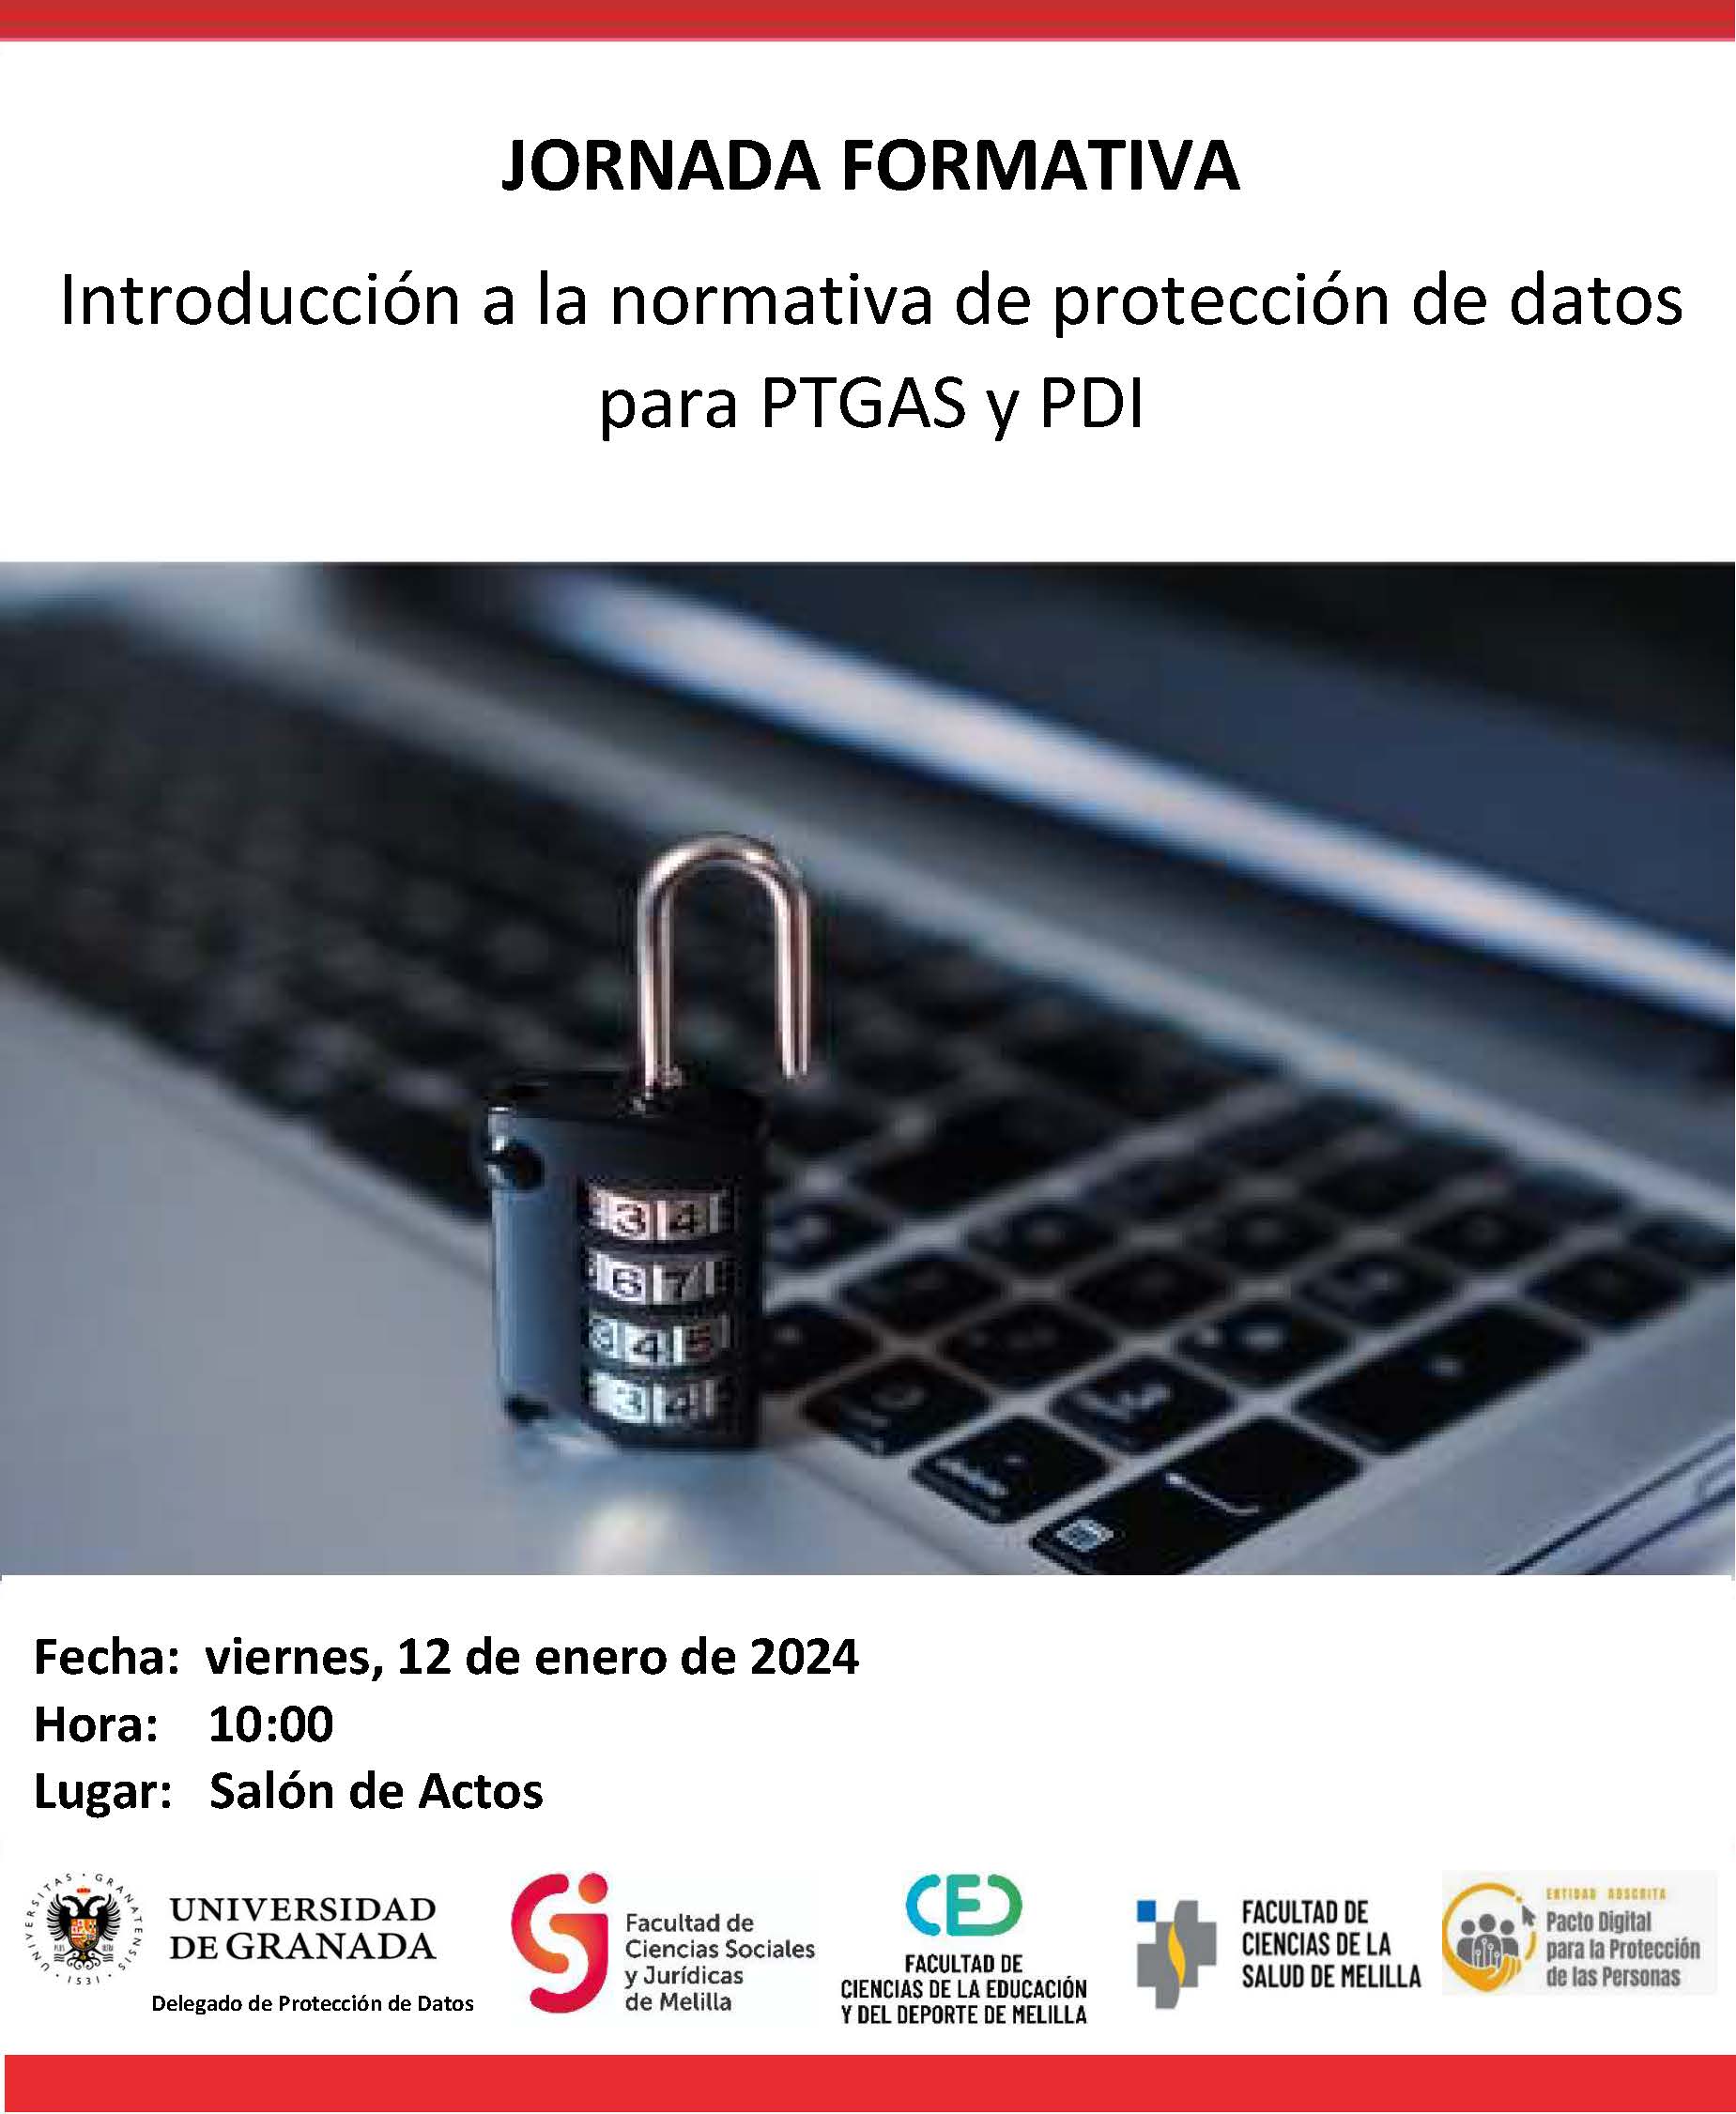 Jornada formativa 'Introducción a la normativa de protección de datos para PTGAS y PDI'